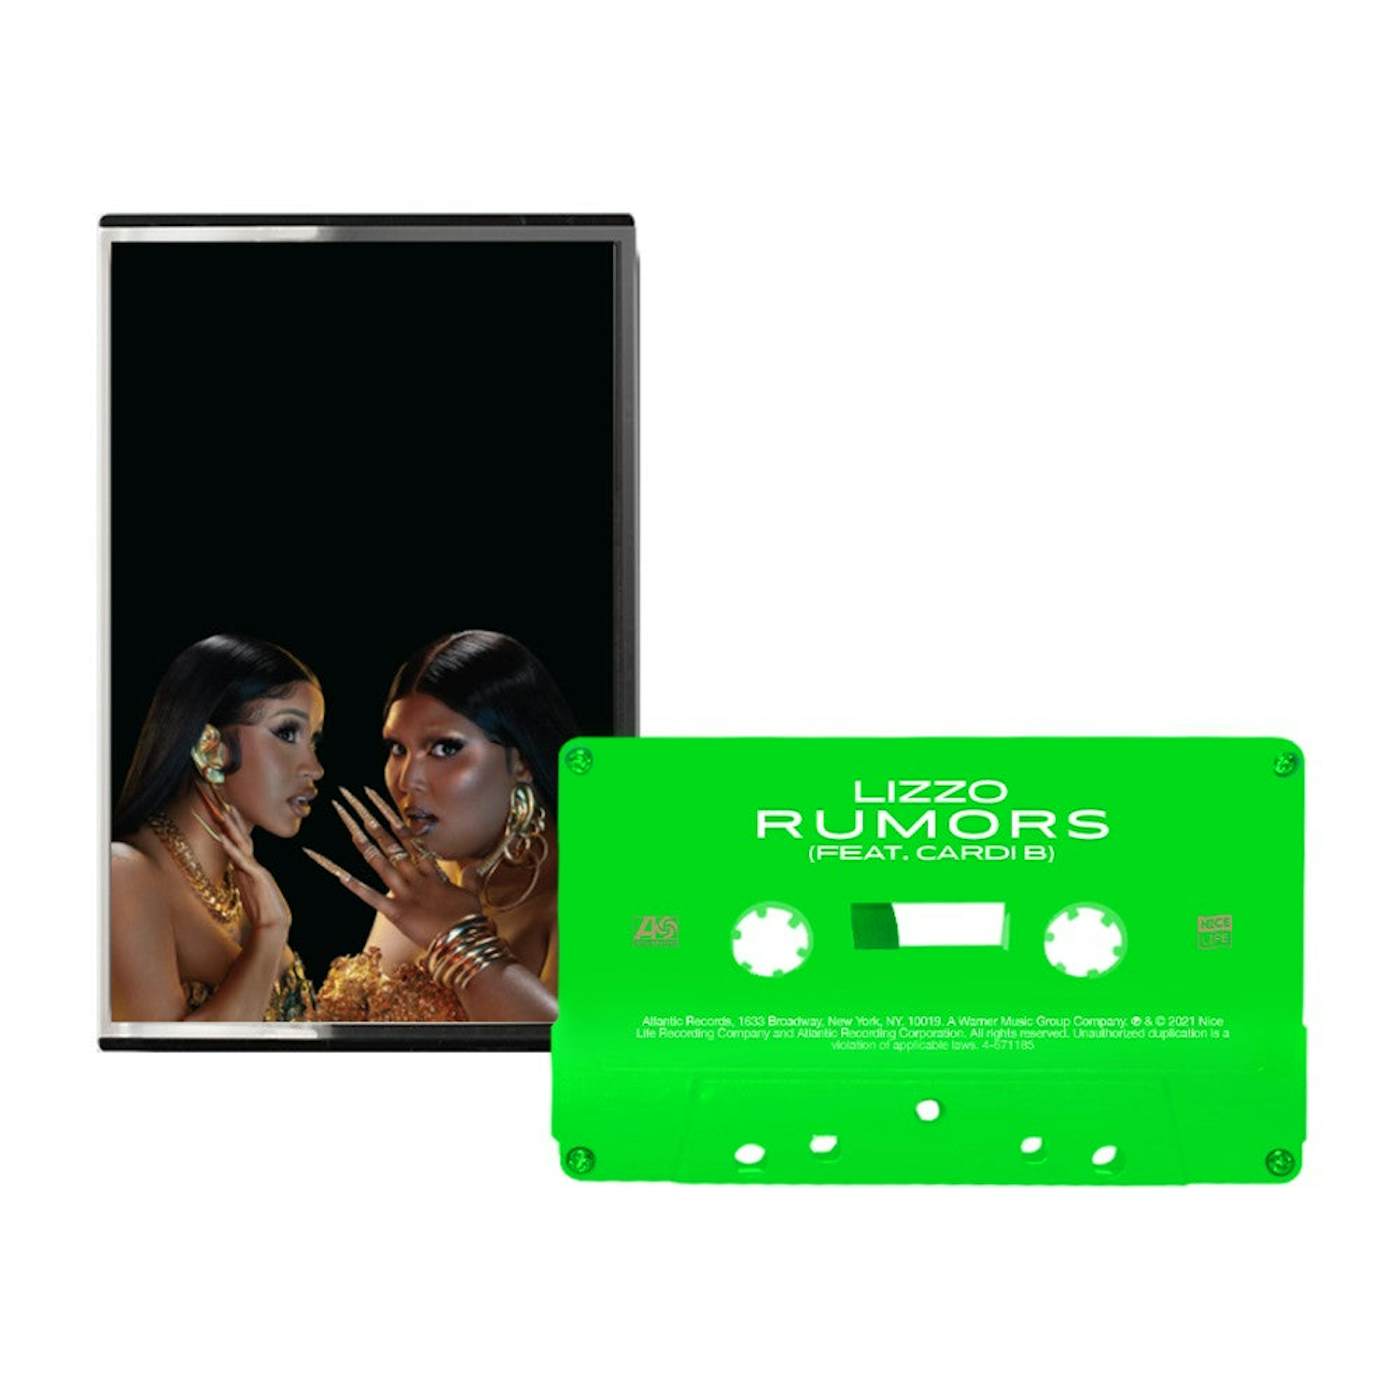 Lizzo Rumors Slime Green Cassette